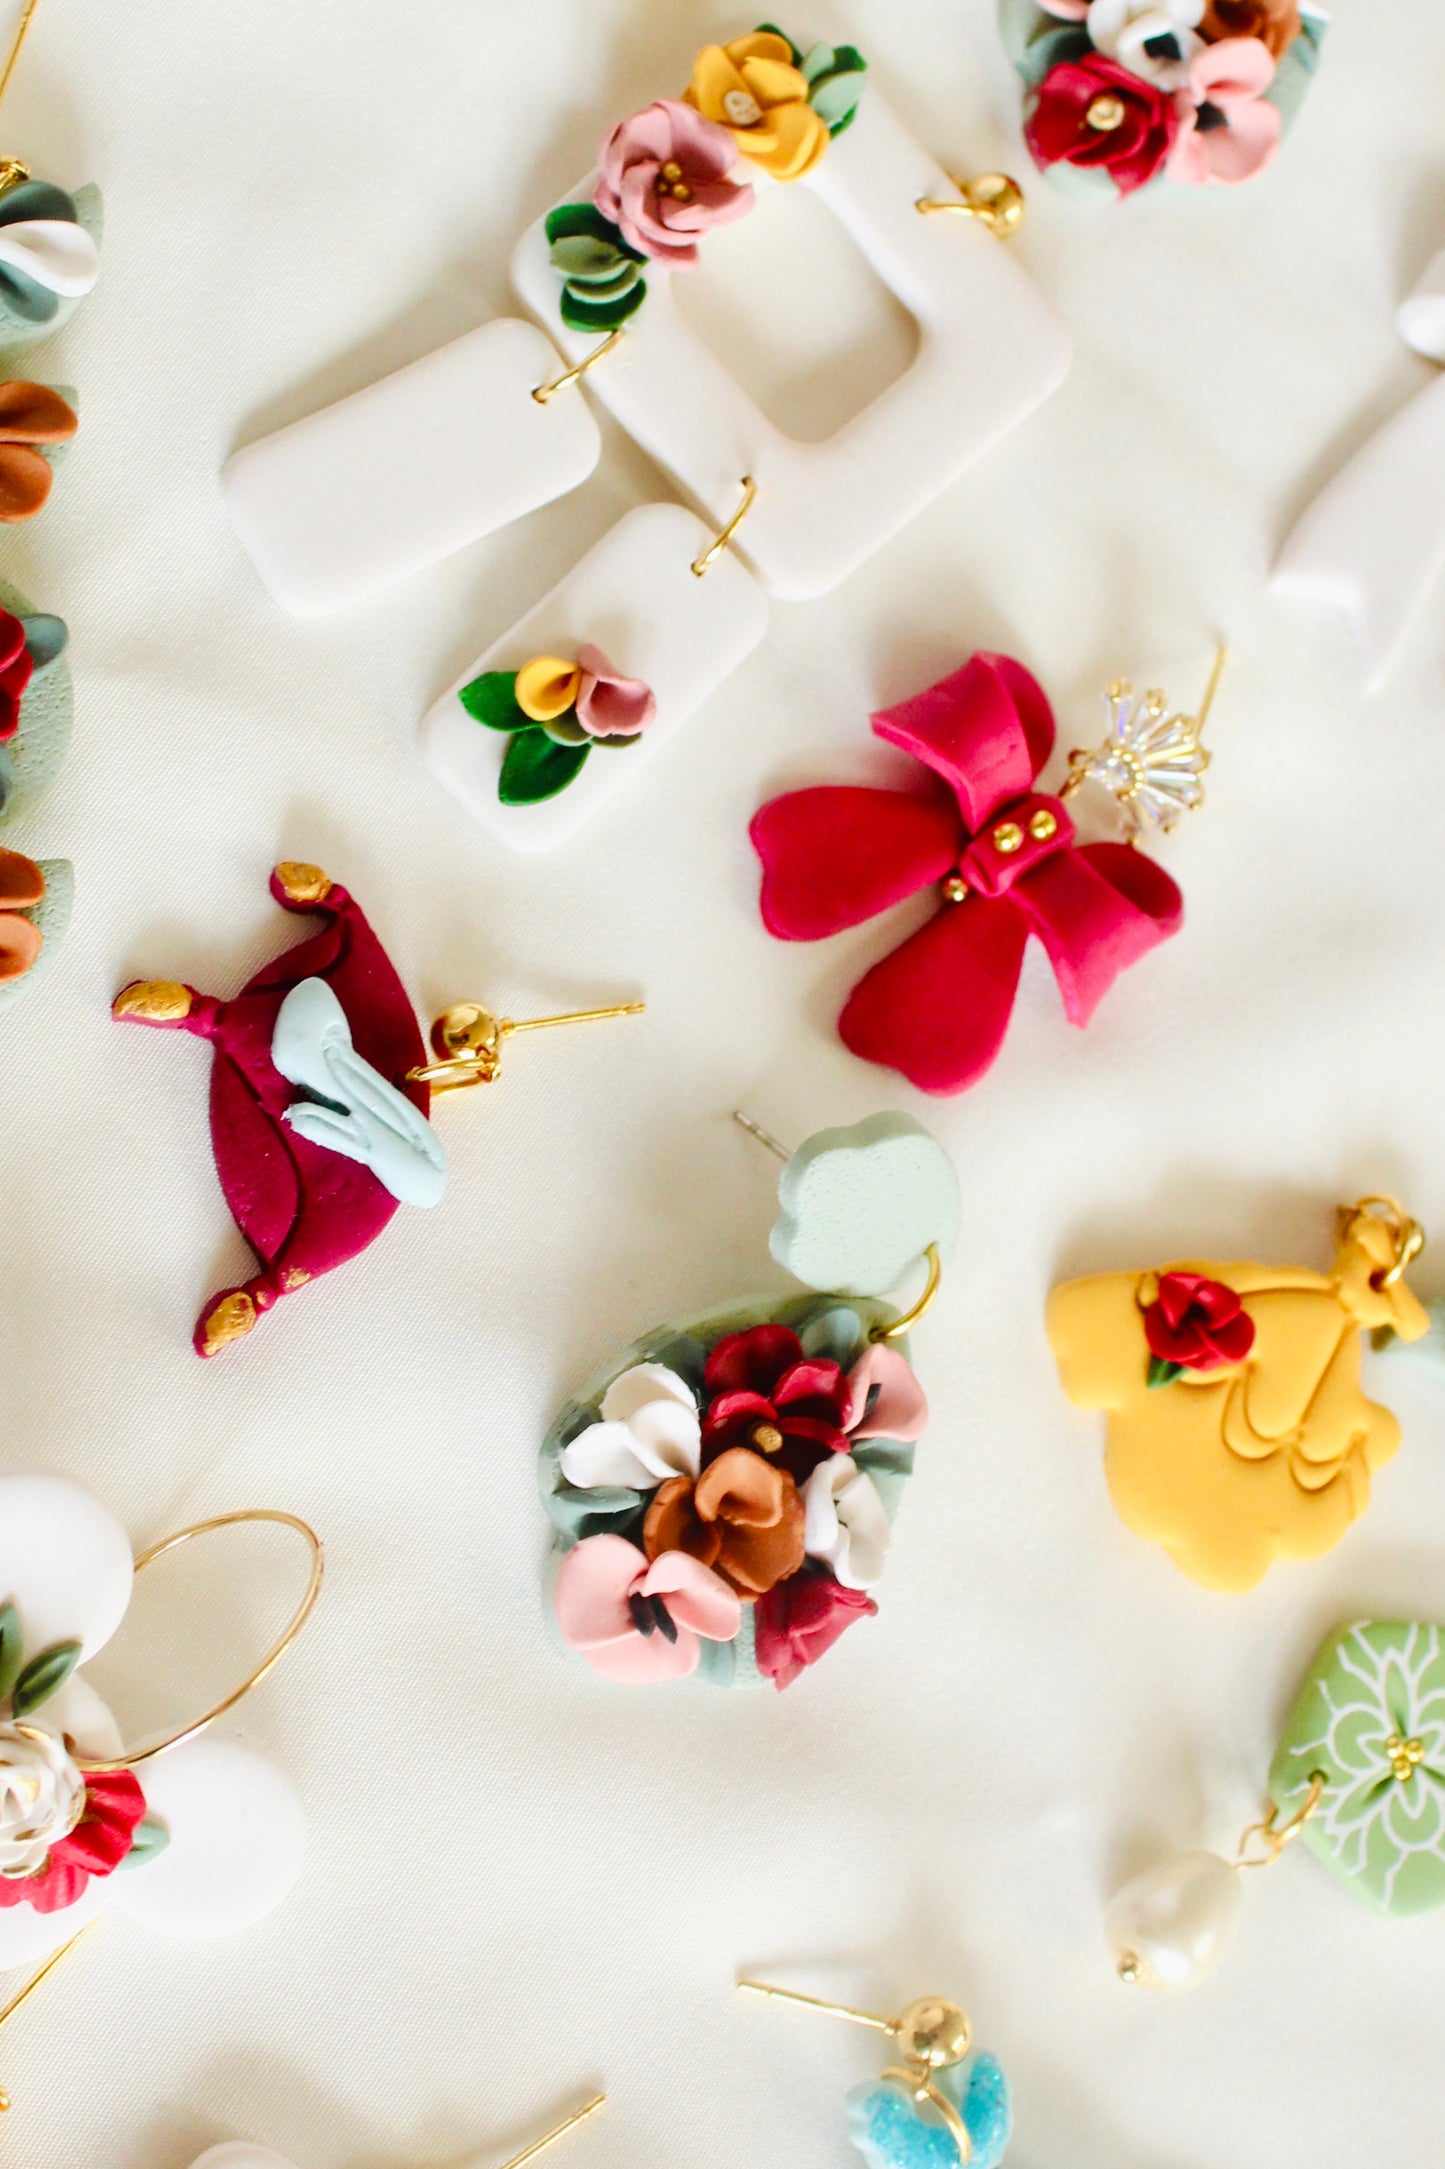 Zuni floral earrings